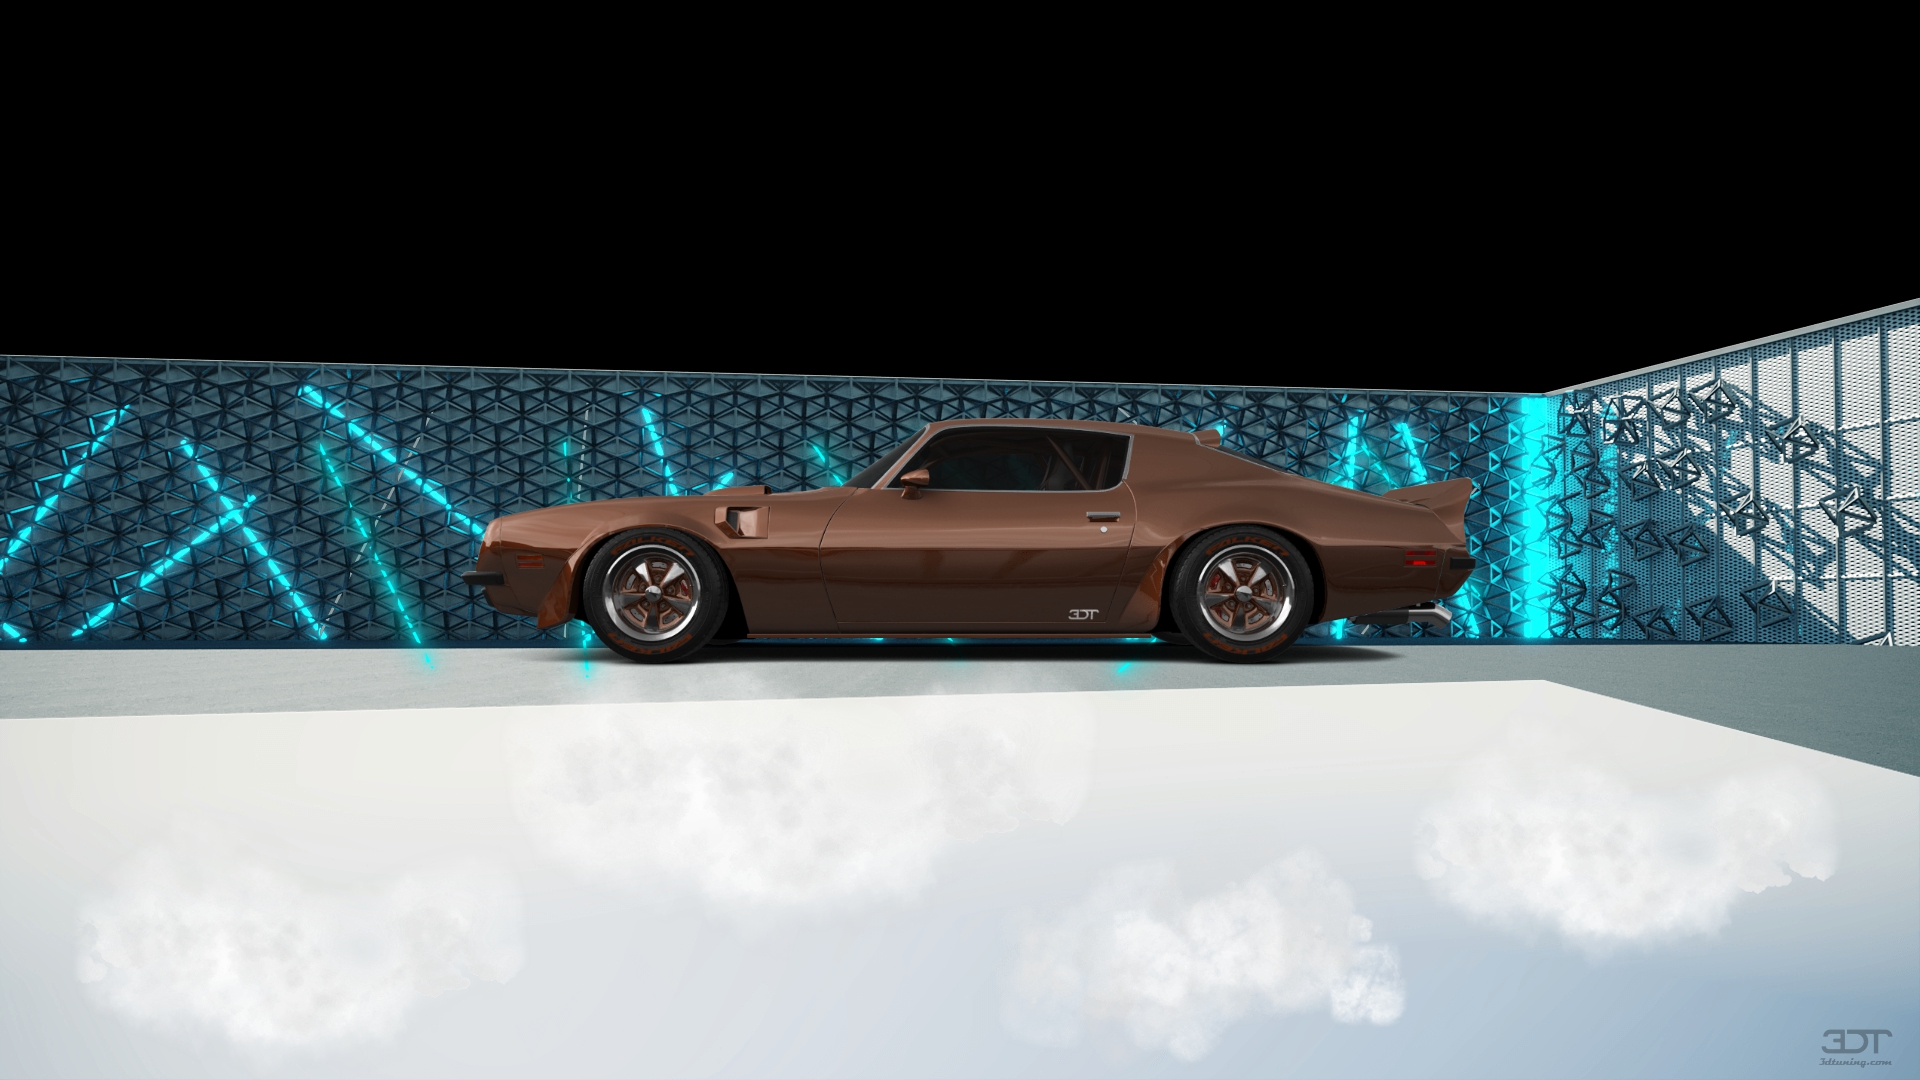 Pontiac Firebird 2 Door Coupe 1974